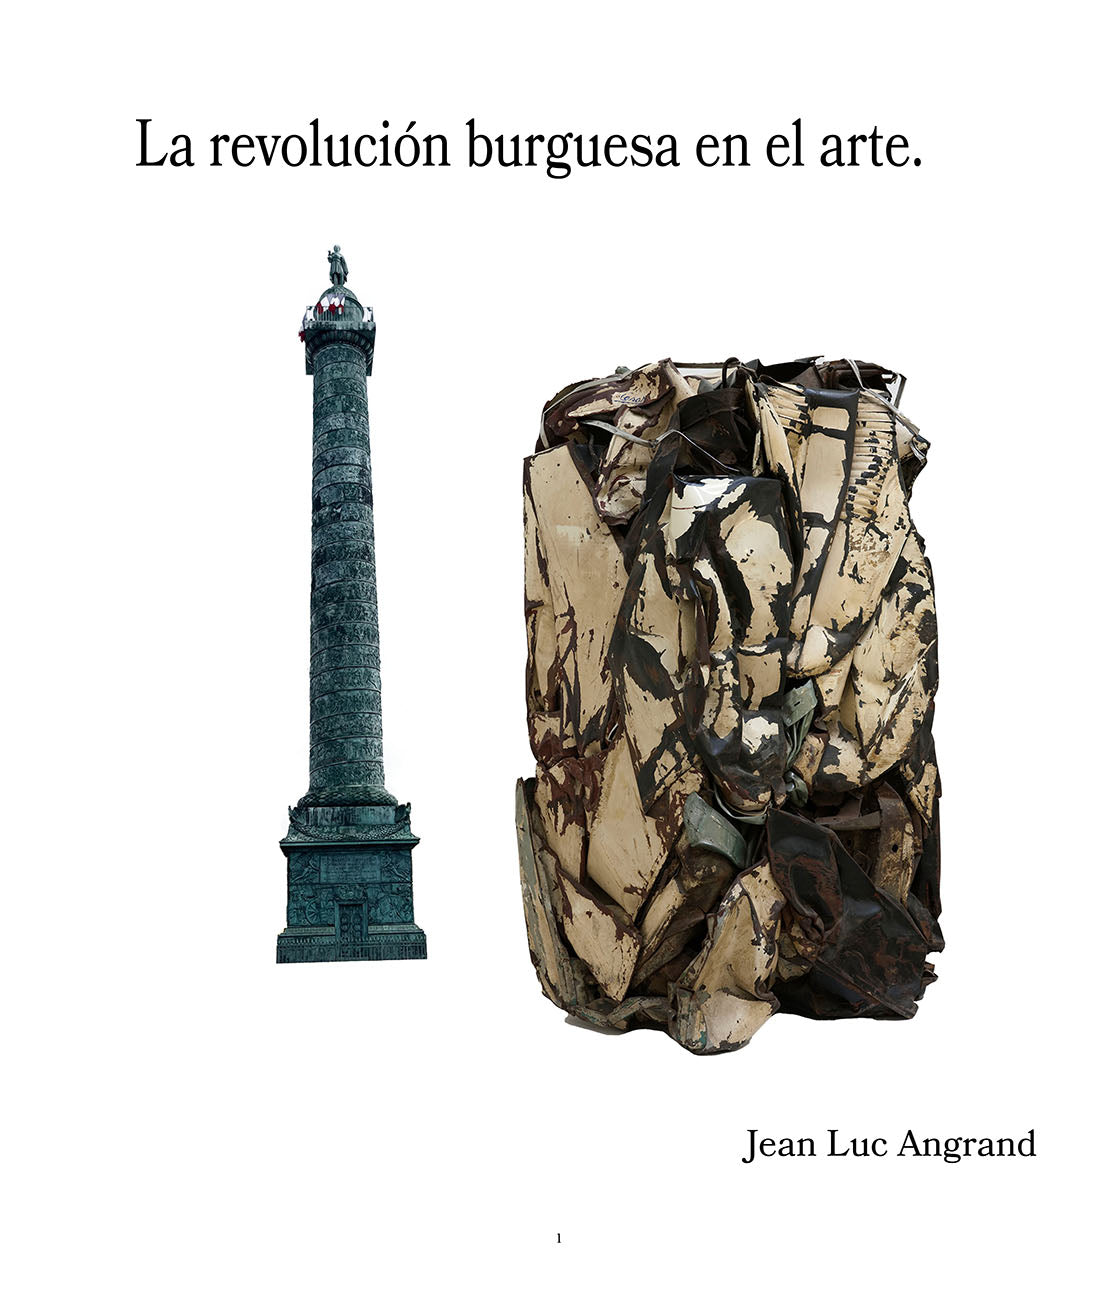 La revolución burguesa en el arte (143 páginas)